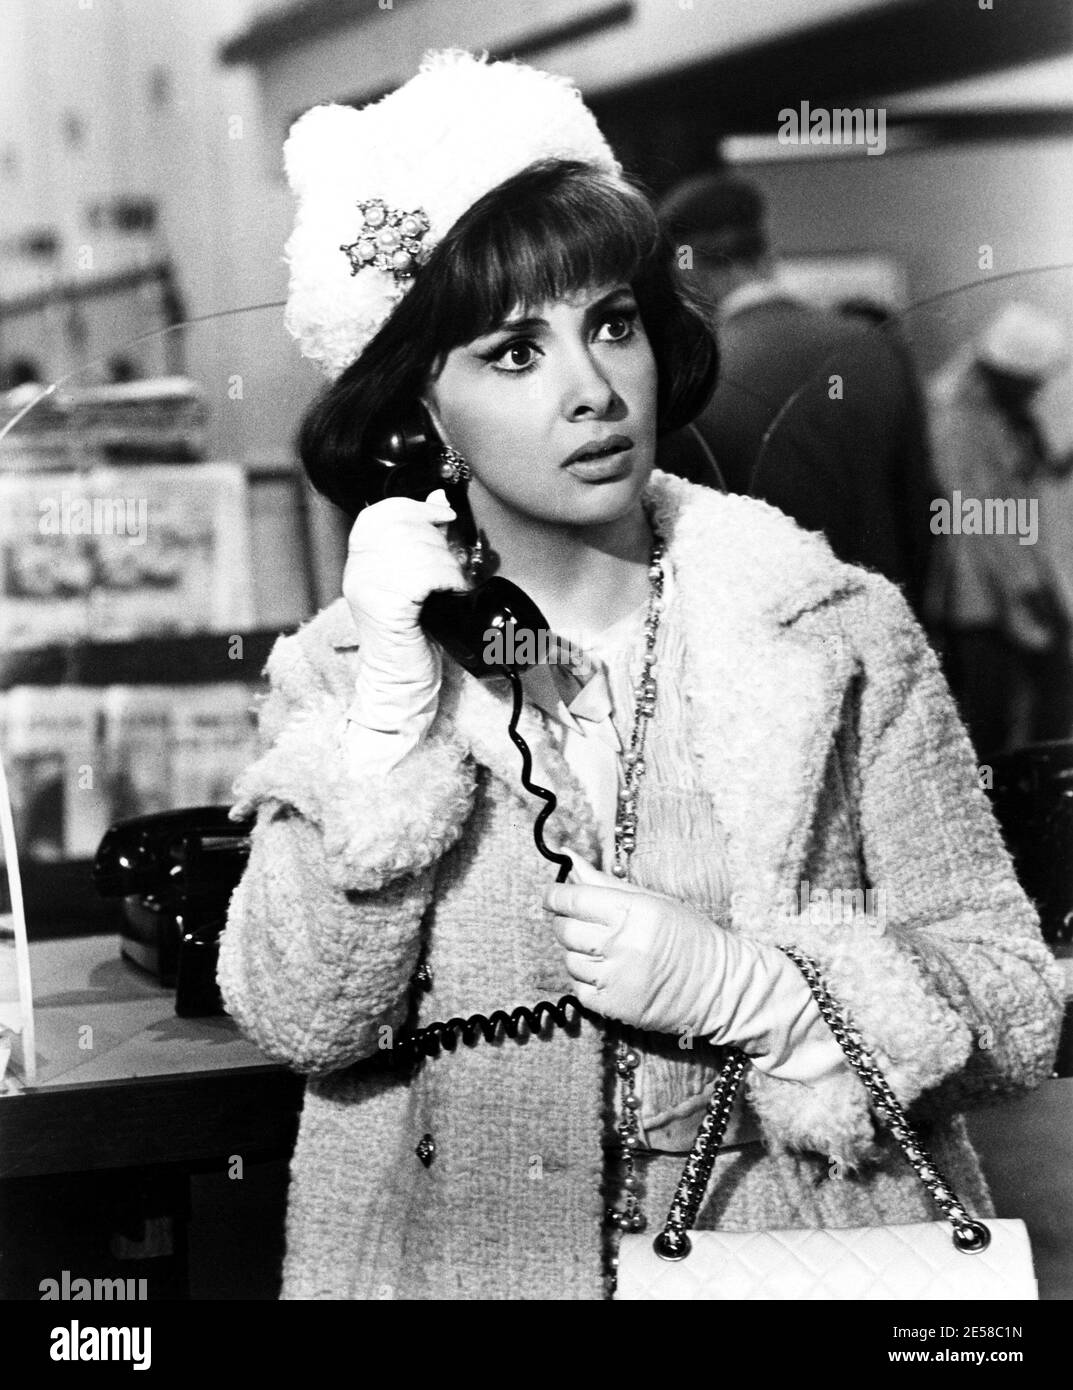 1965 , USA : l'attrice cinematografica italiana GINA LOLLOBRIGIDA in STRANI FELLOW ( Strani compagni di letto ) di Melvin Frank, Universal Studio foto - CINEMA - FILM - ritratto - ritratto - cappello - cappello - cappello - bijoux - telefono - telefono - telefono - telefono - telefonica - chiamata - personalità al telefono - attori attori attori - personalità personalità a - borsa - borsetta - borsa - stuporo - sorpresa - Sorpresa ---- Archivio GBB Foto Stock